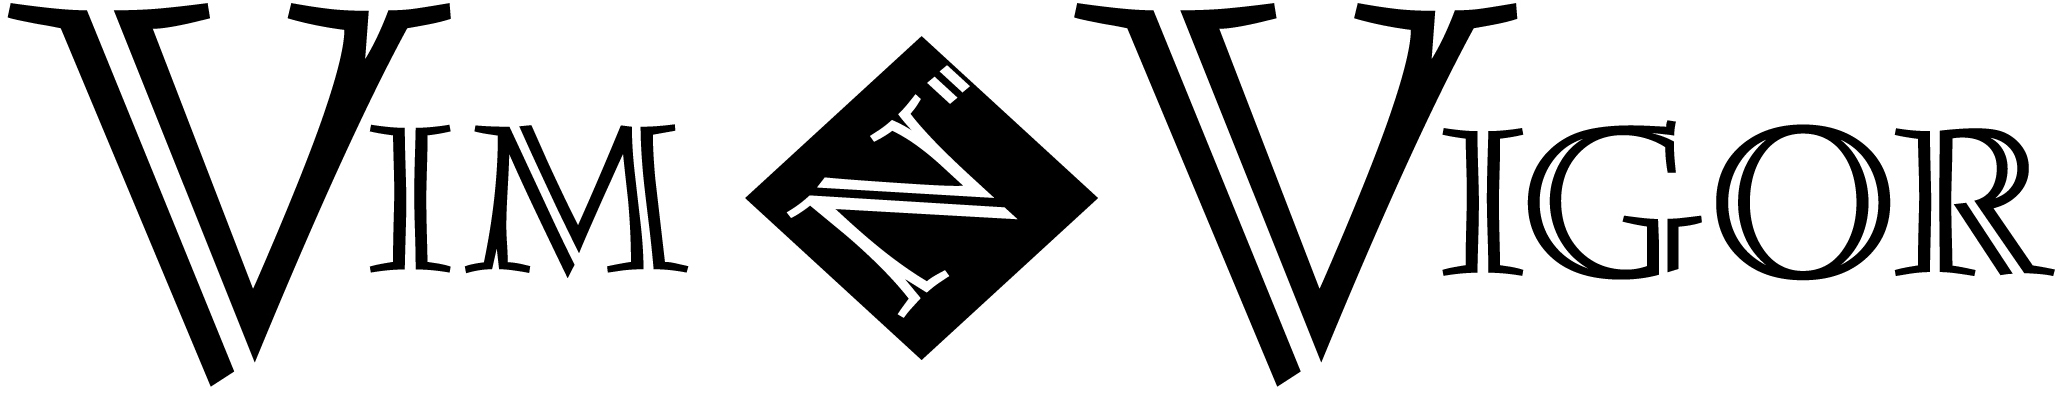 빔 앤 비거 헬스 & 피트니스 (Vim N" Vigor Health & Fitness) Logo